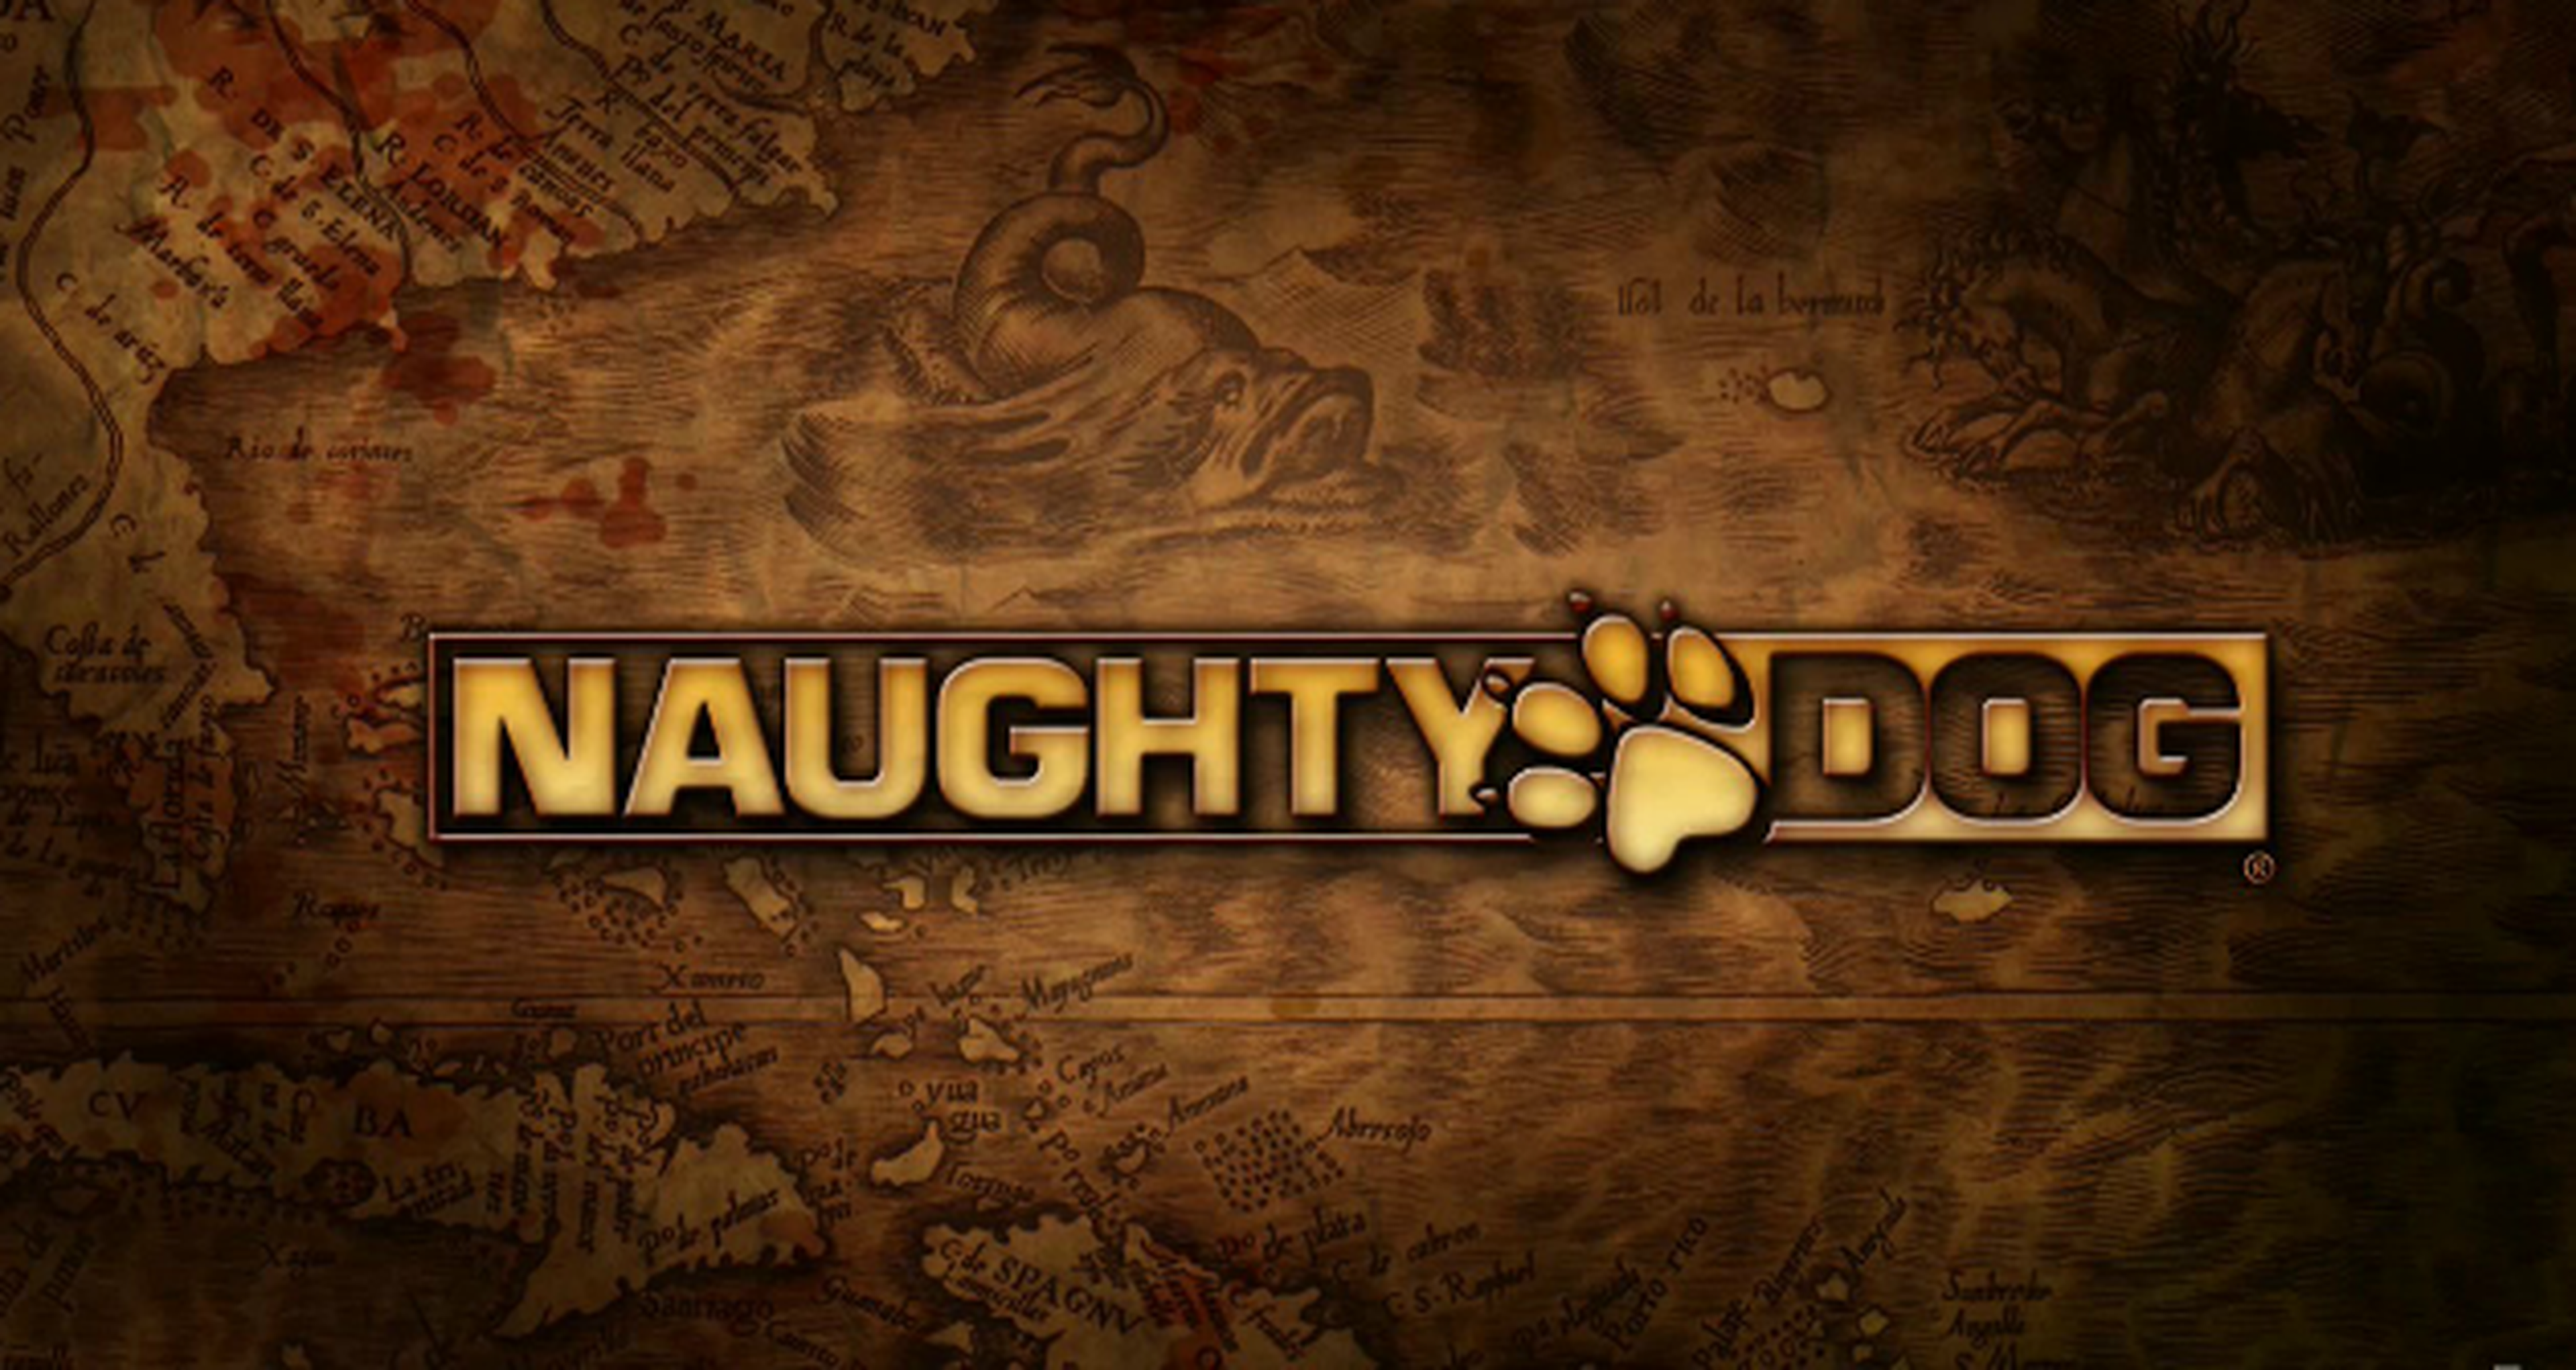 Las diferencias creativas, posibles motivos en las bajas de Naughty Dog